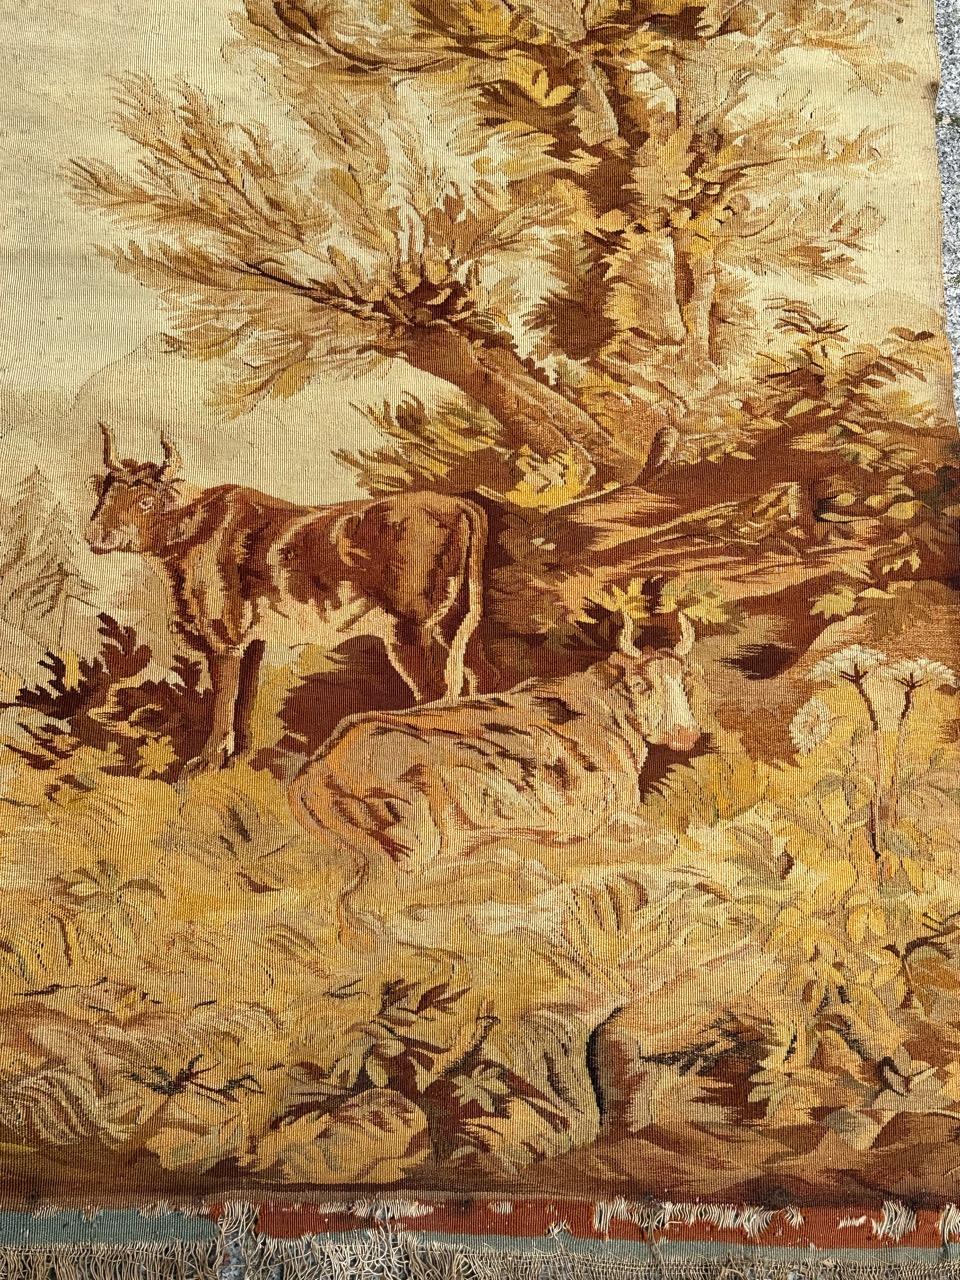 Très belle et fine tapisserie d'Aubusson avec un joli design représentant deux vaches sous l'arbre, aux belles couleurs naturelles, avec du jaune, du beige, du marron et du vert, entièrement et finement tissée à la main avec de la laine dans les